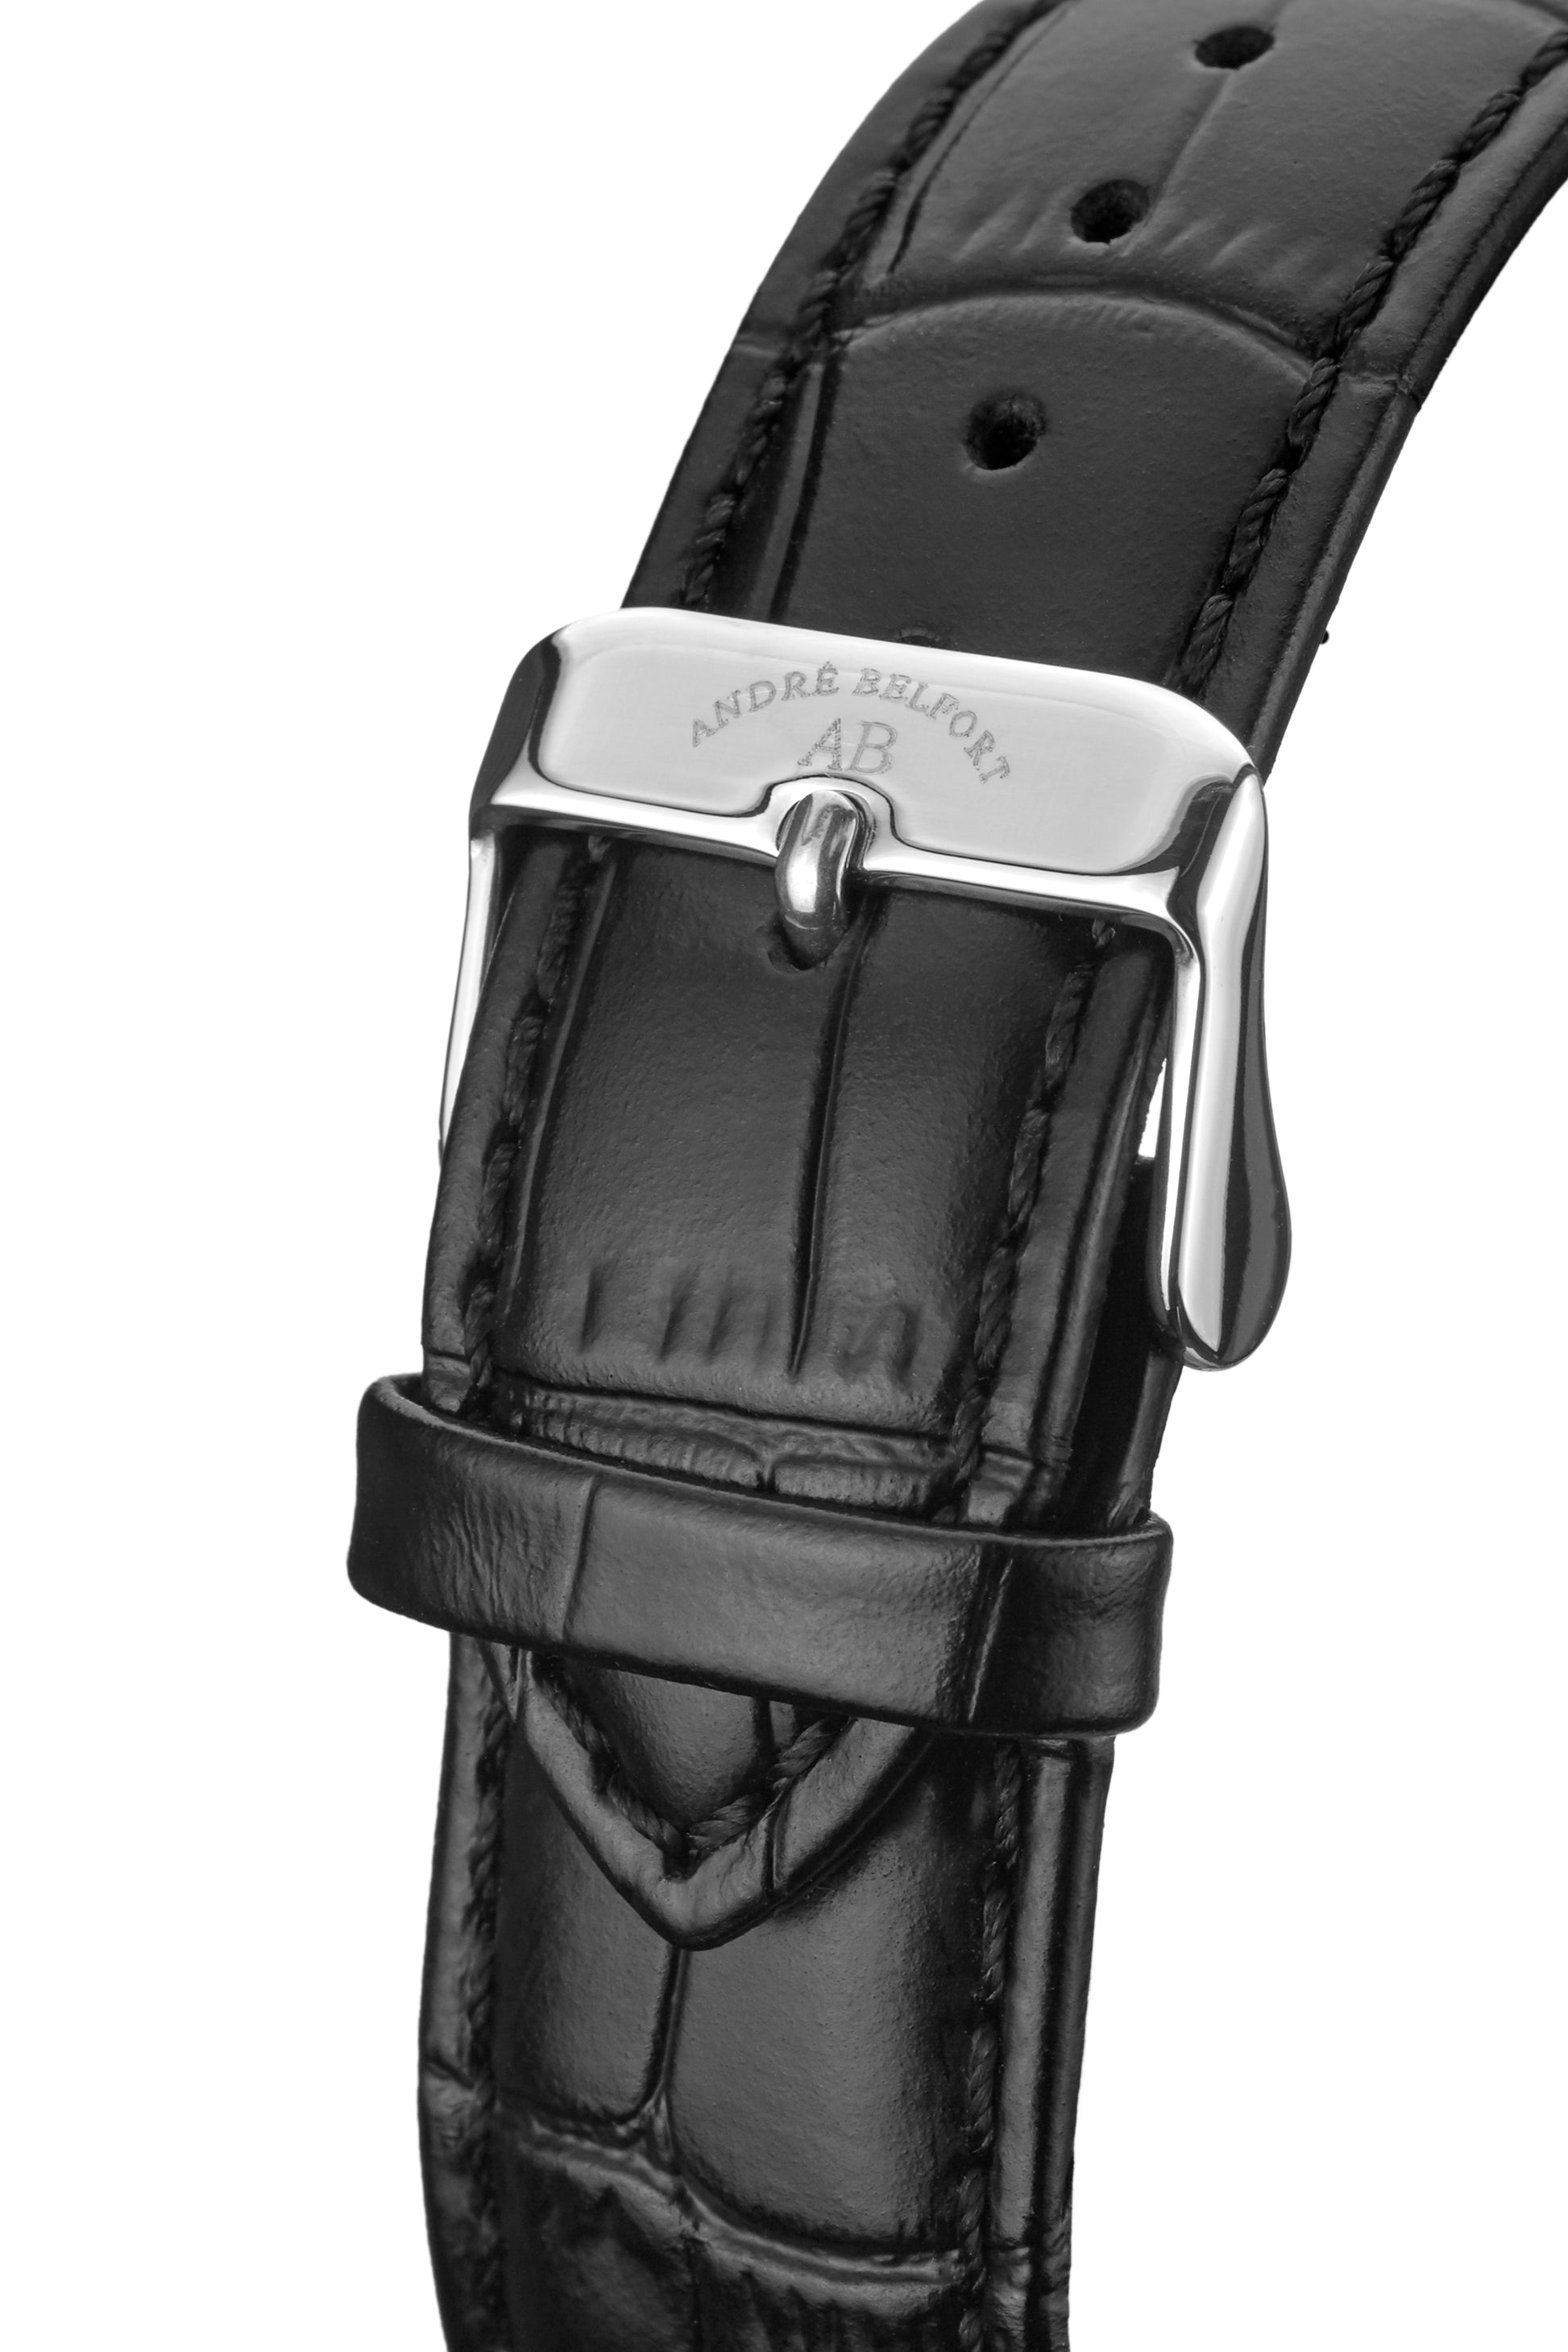 Automatic watches — Étoile Polaire — André Belfort — leather black